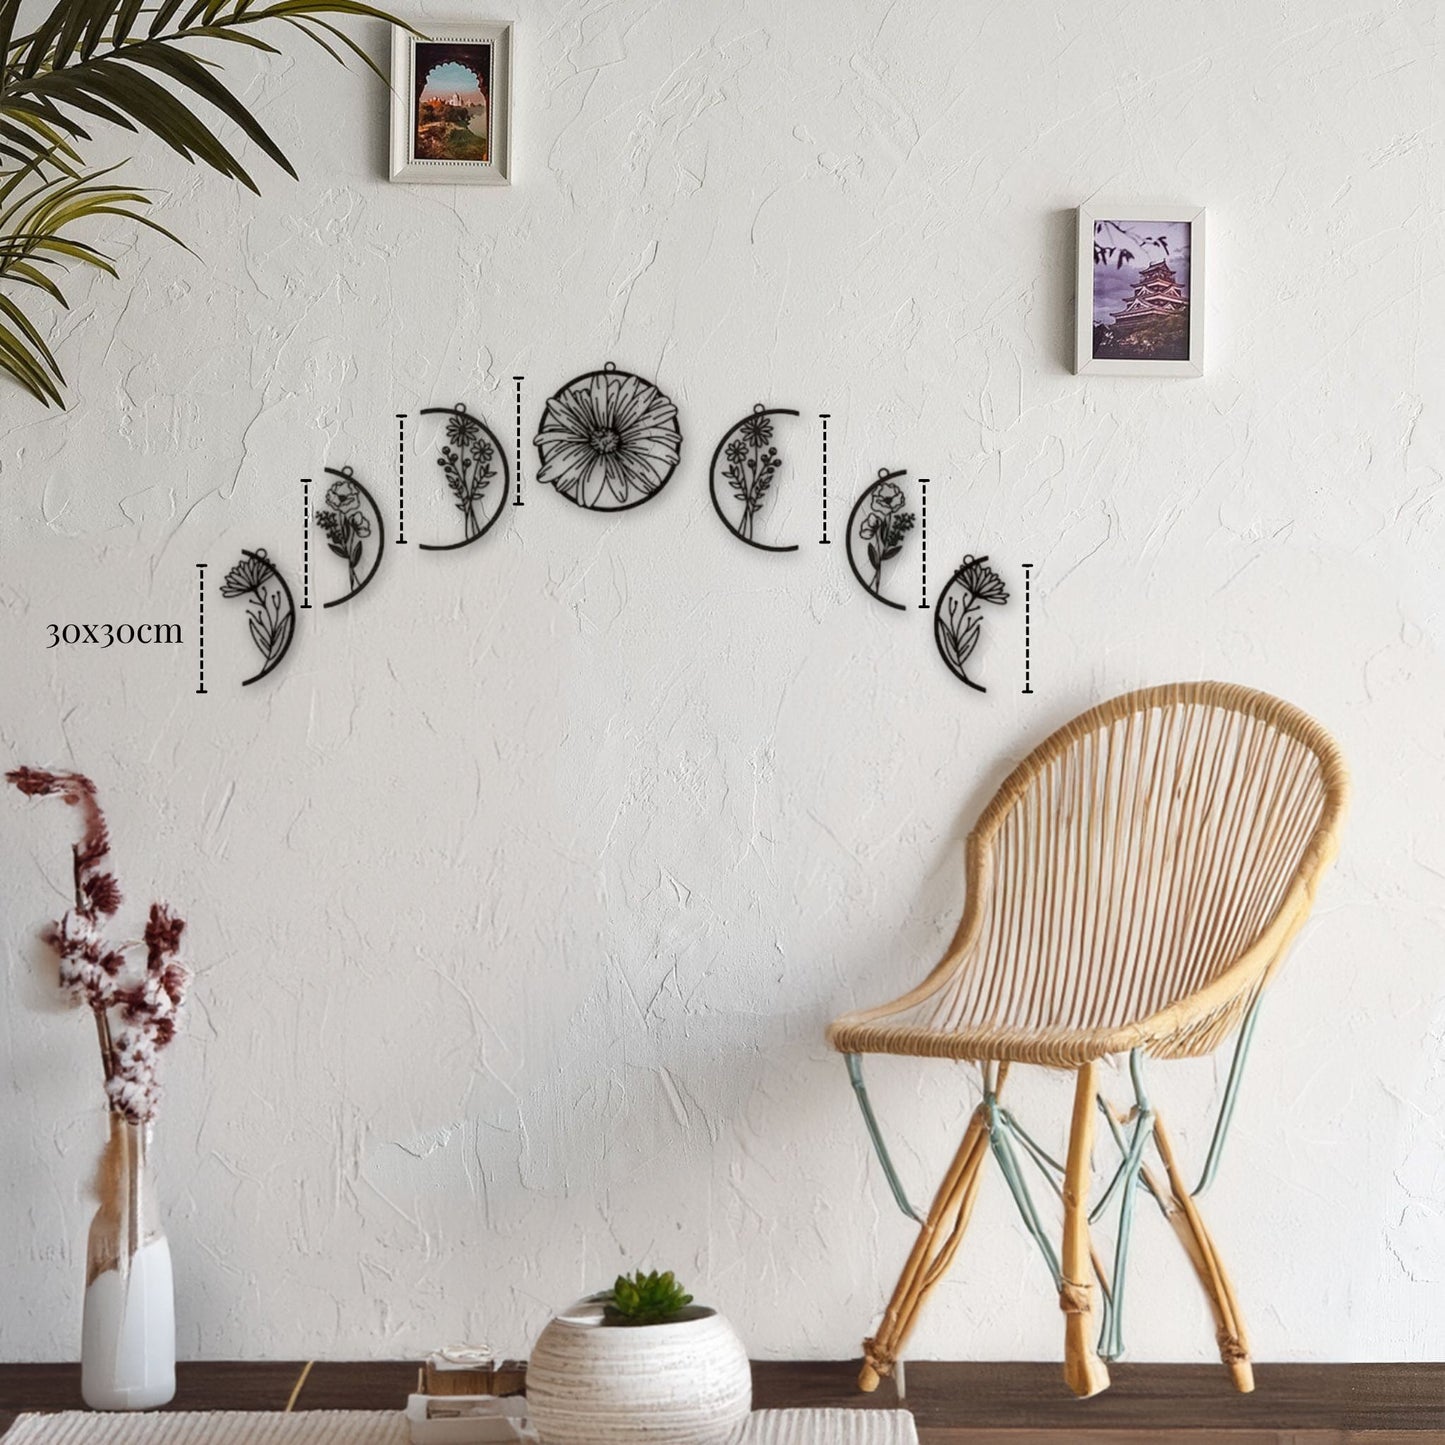 Décoration murale métal lune - ensemble de sculptures murales en métal noir de 30x30cm représentant différentes phases de la lune avec des motifs floraux, accrochées en arc sur un mur blanc texturé, à côté d'une chaise en osier et d'une plante décorative.